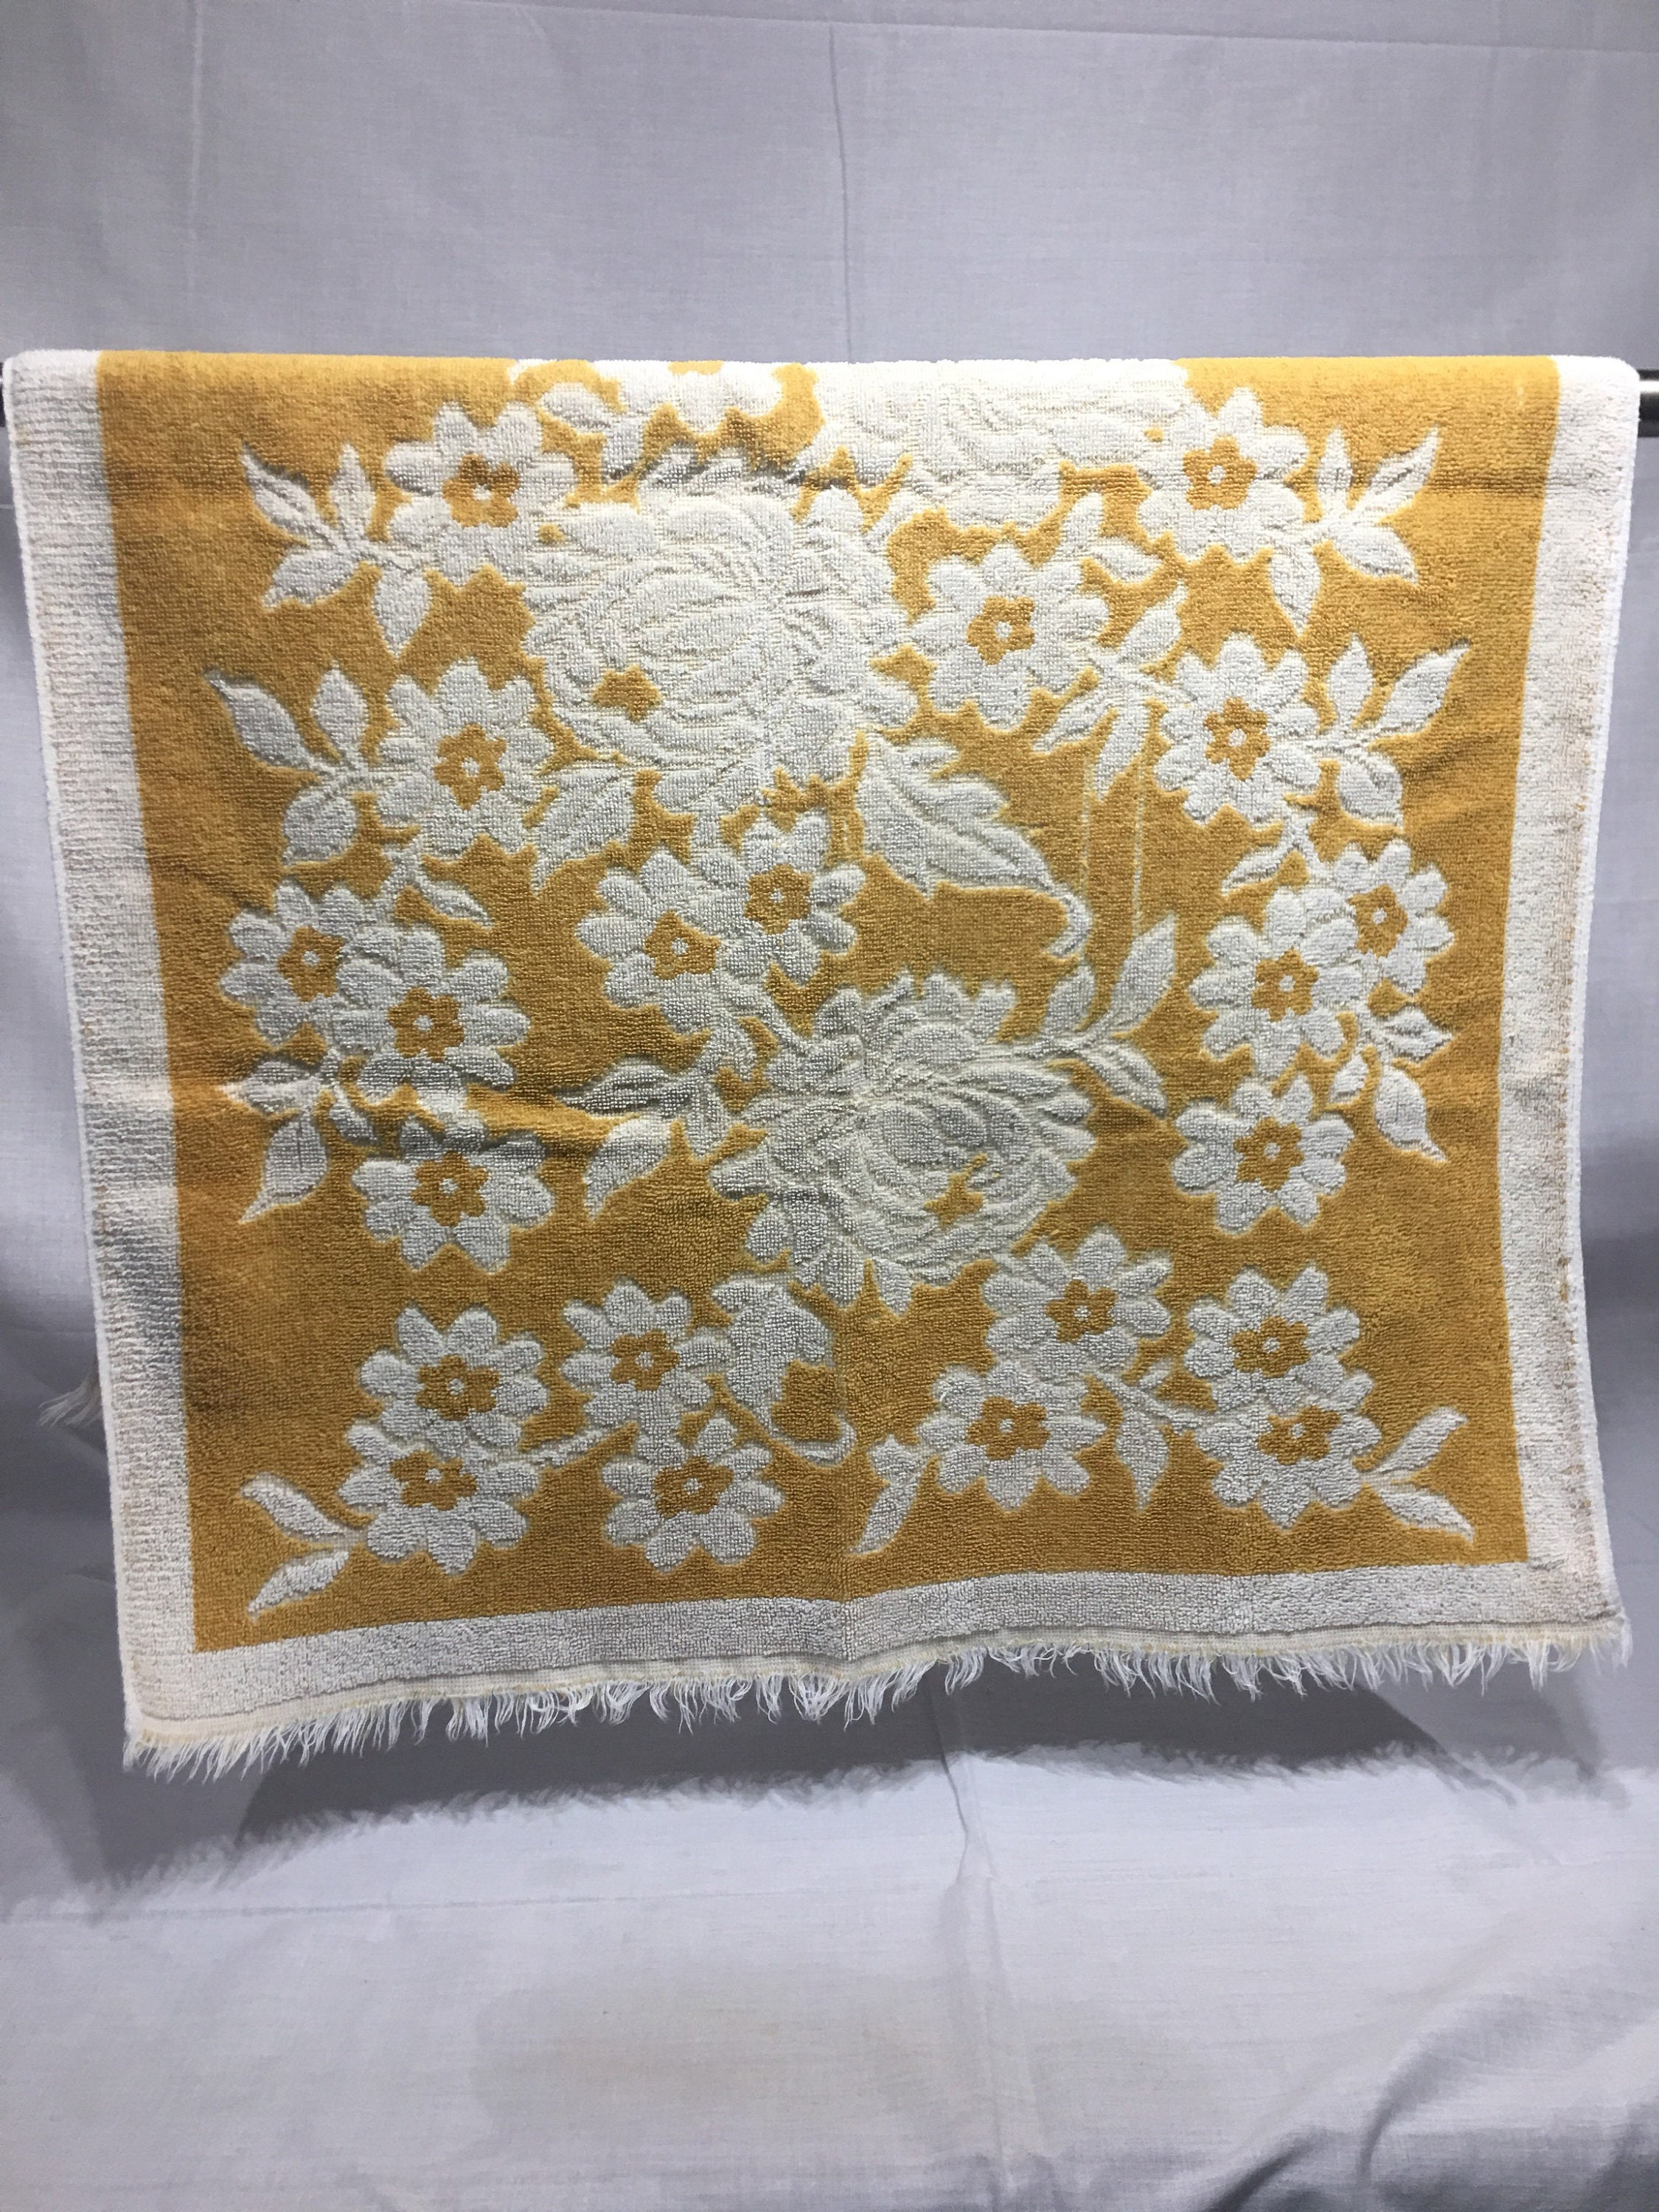 Details about   Vintage Floral/Fringe--Gold/Yellow--Bath Towel--Fieldcrest--100% Cotton--1960's 